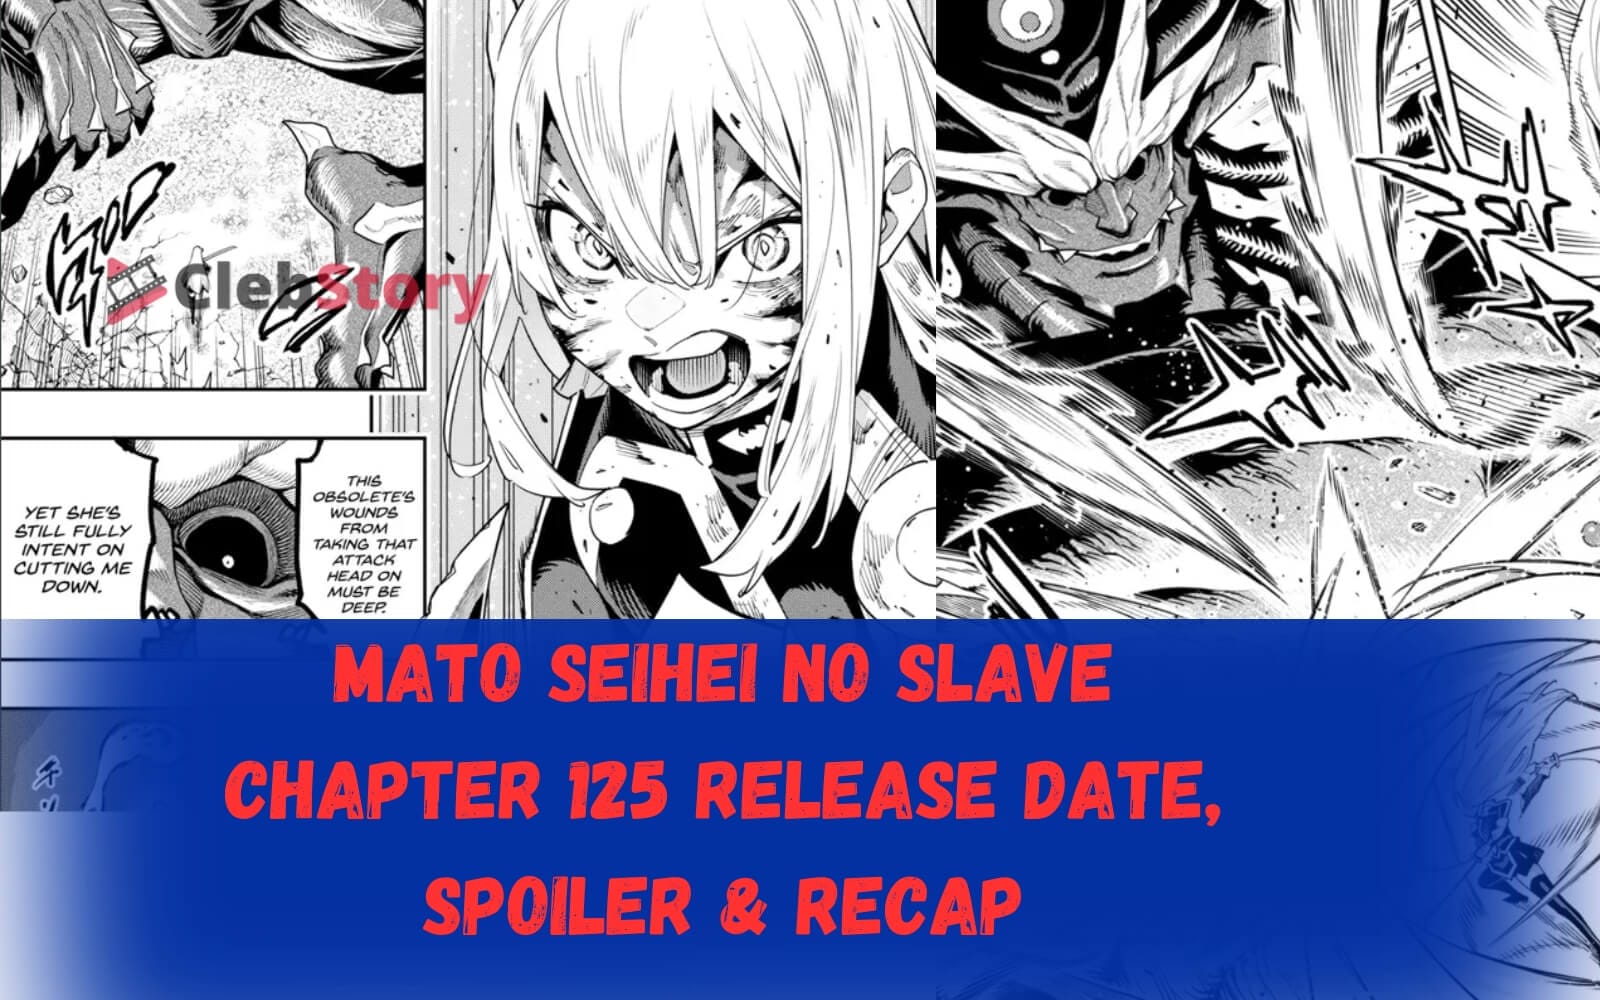 Mato Seihei no Slave Chapter 125 title poster